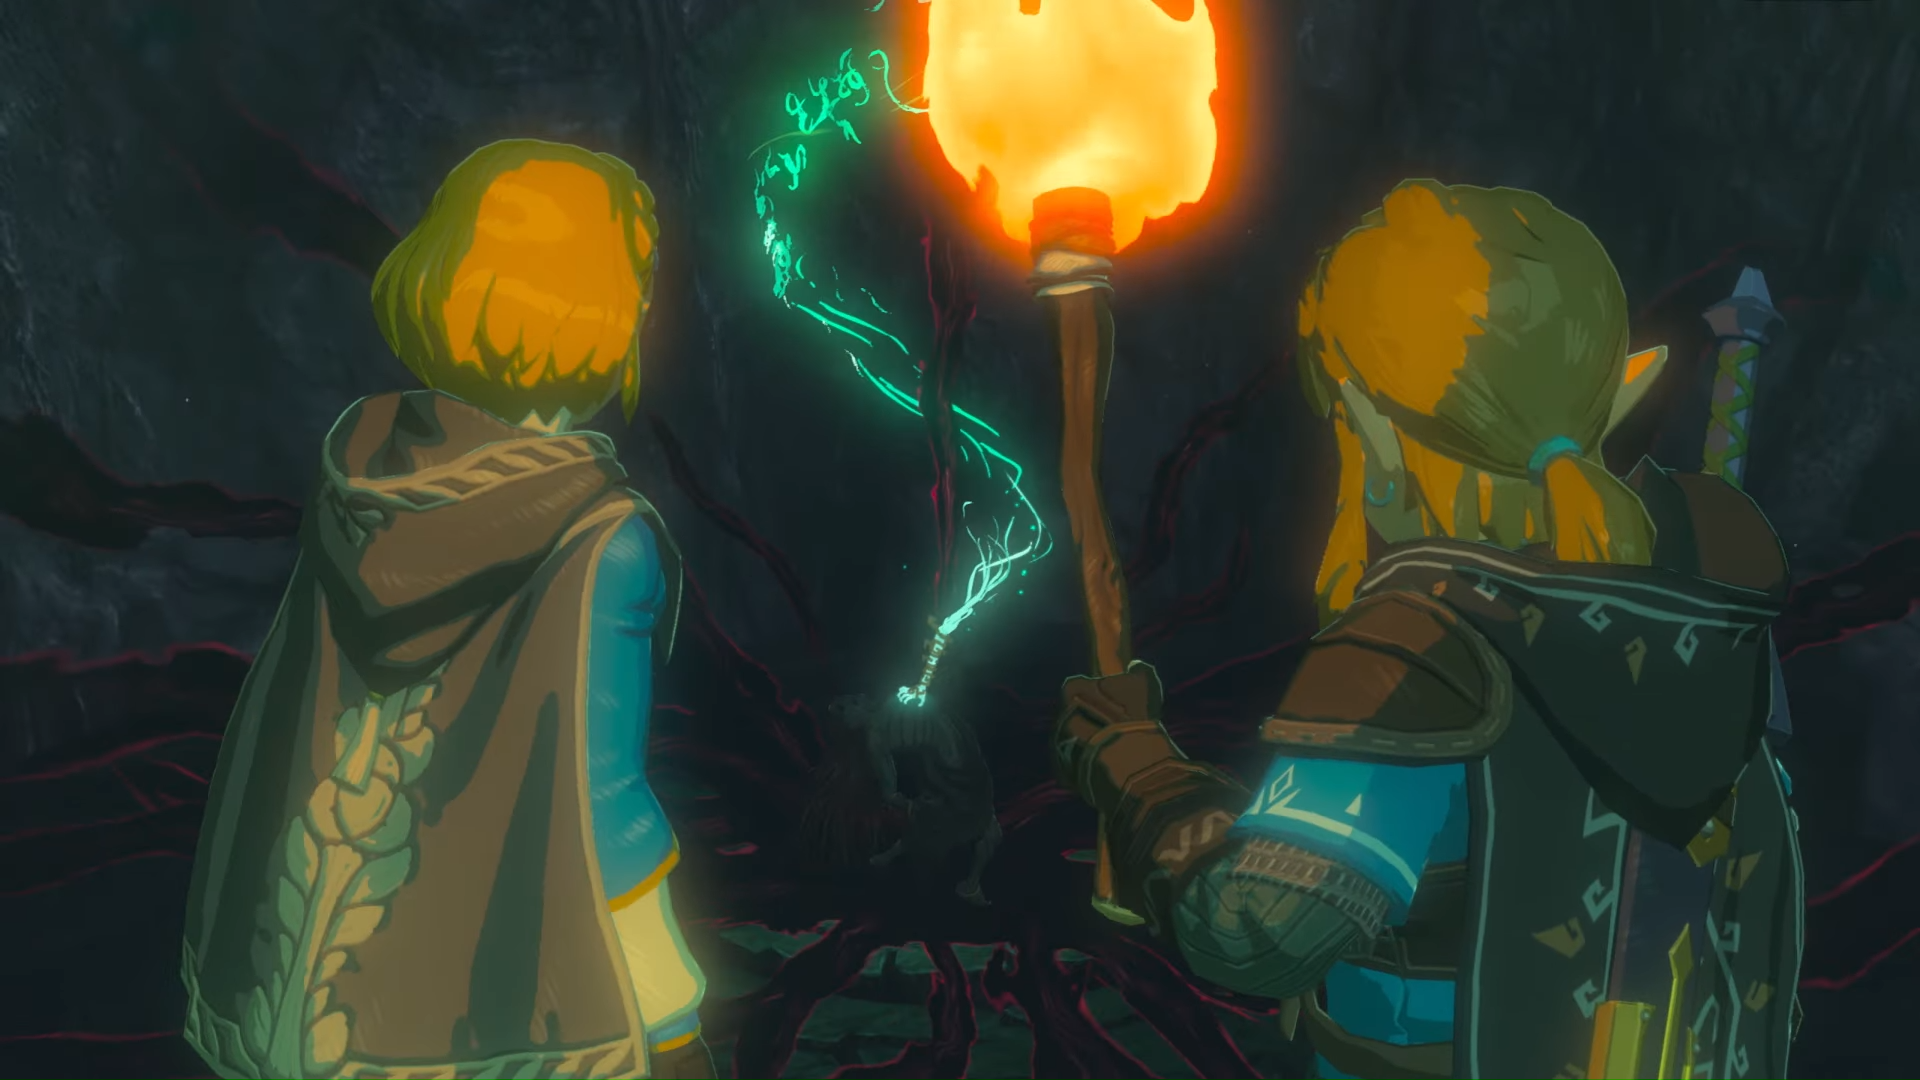 Zelda Breath Of The Wild 2 , HD Wallpaper & Backgrounds